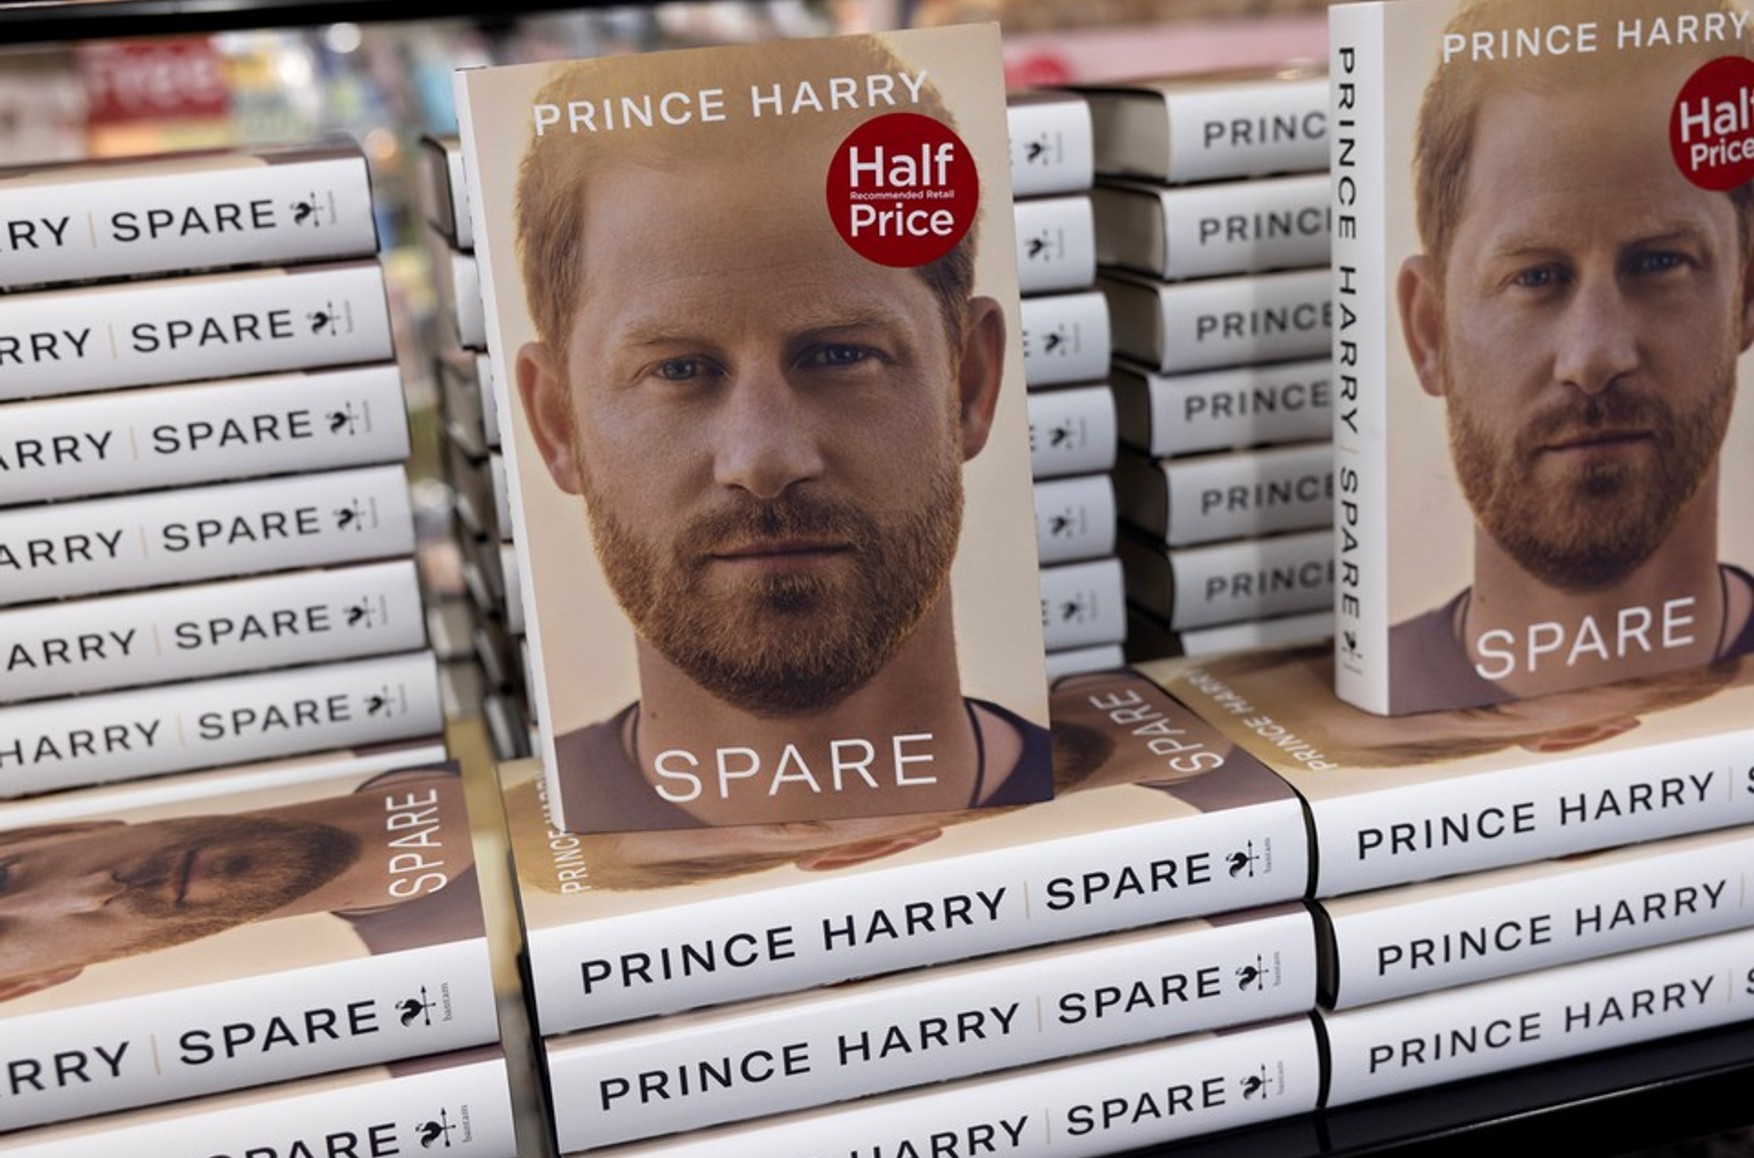 Российское издательство выпустит мемуары принца Гарри в пересказе, чтобы обойтись без лицензии